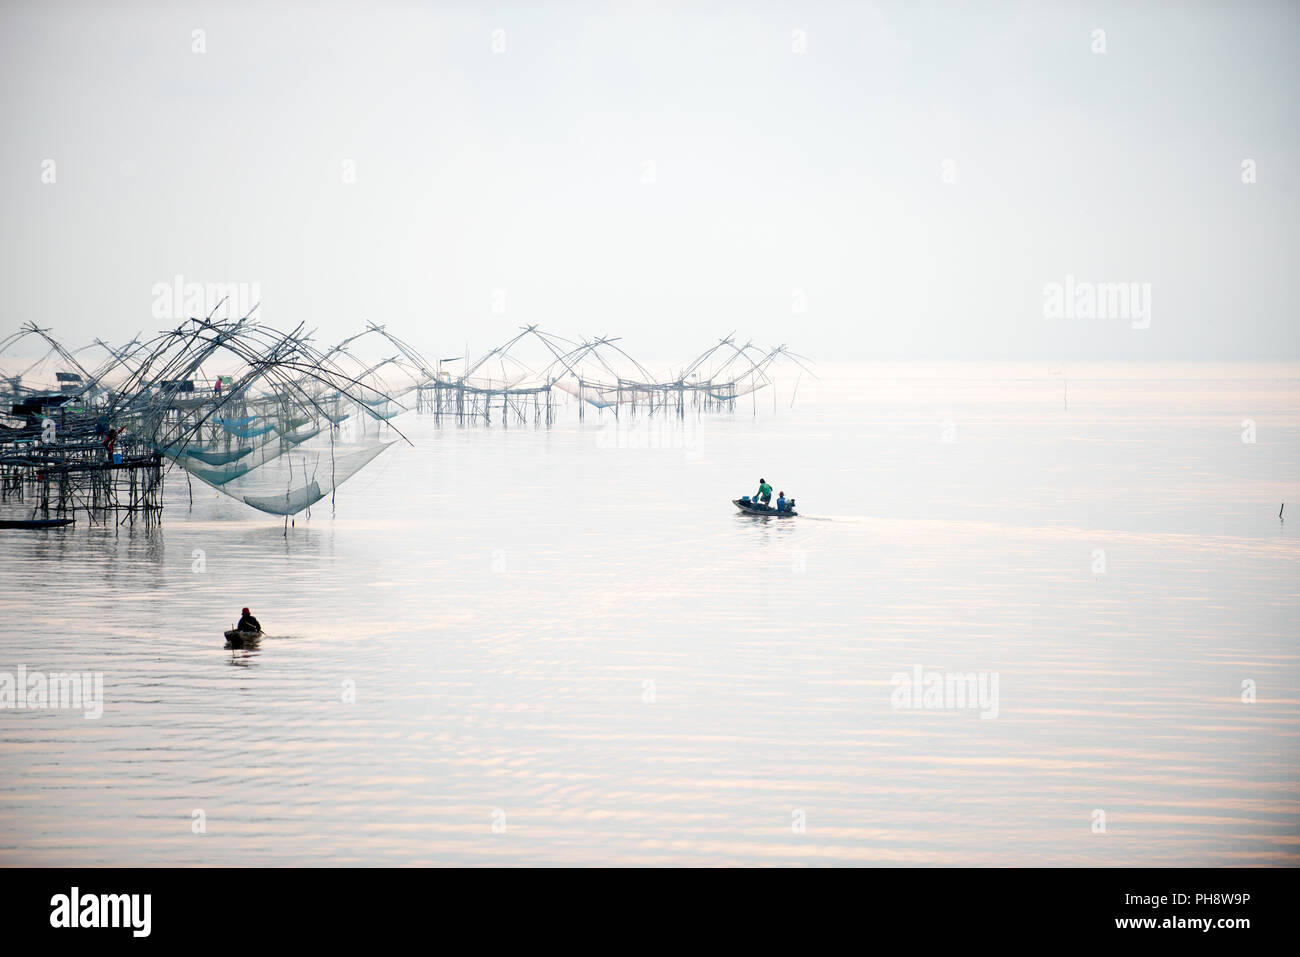 Thailand, Phatthalung, Fischer auf kleinen Boot, Sunrise Pêcheur en Barque, Lever du Soleil, Sud Thaïlande Stockfoto